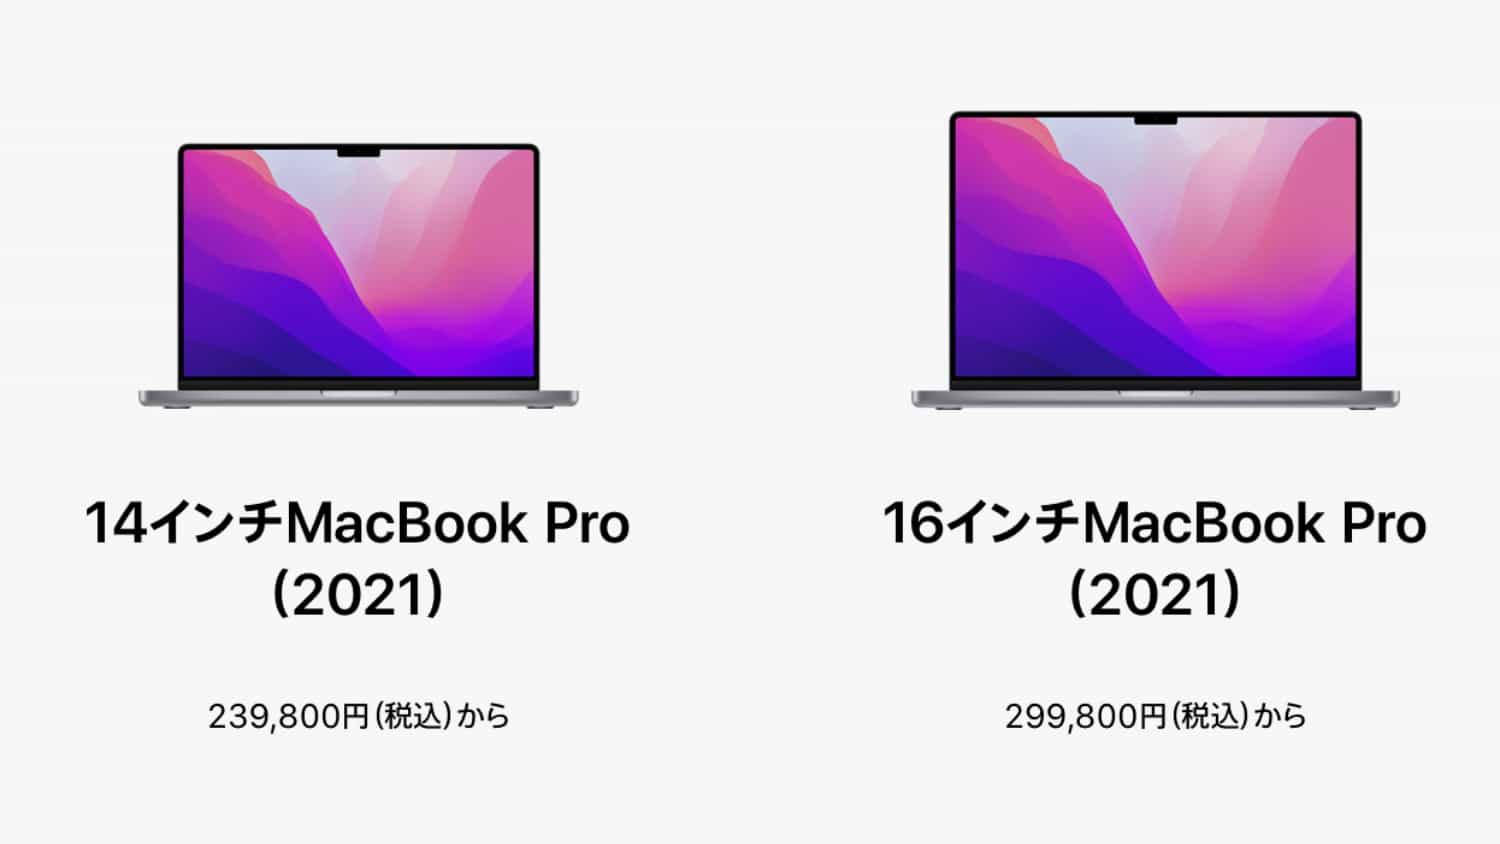 テレワーク会社員が「新型 MacBook Pro 2021」を購入するとしたらどんな構成で購入するか本気で考えてみた